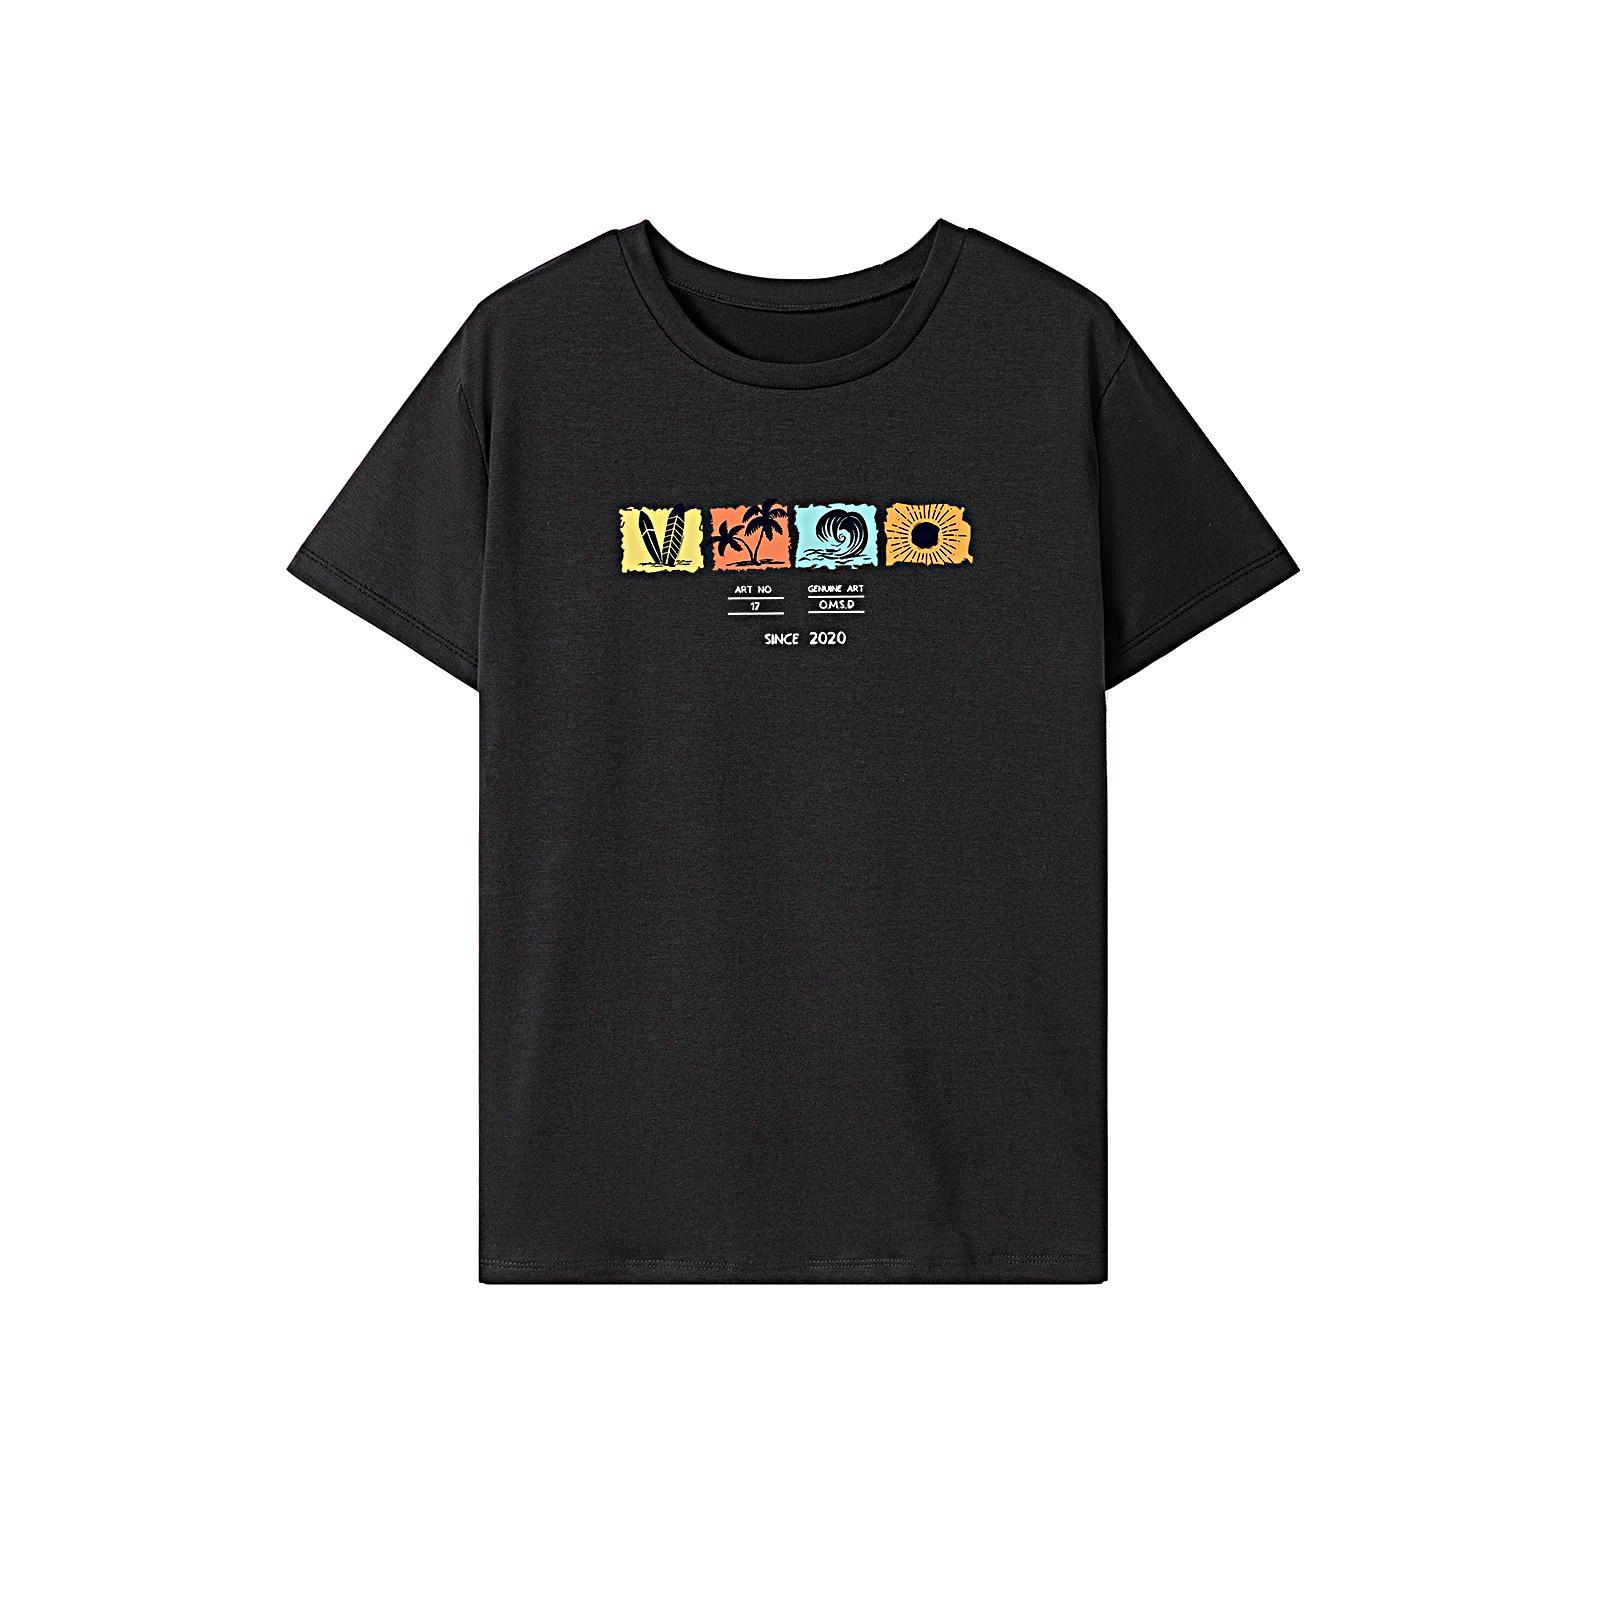 Women's T Shirt Summer Souvenir Sportswear Crewneck Tee for Trip Work Travel XXL